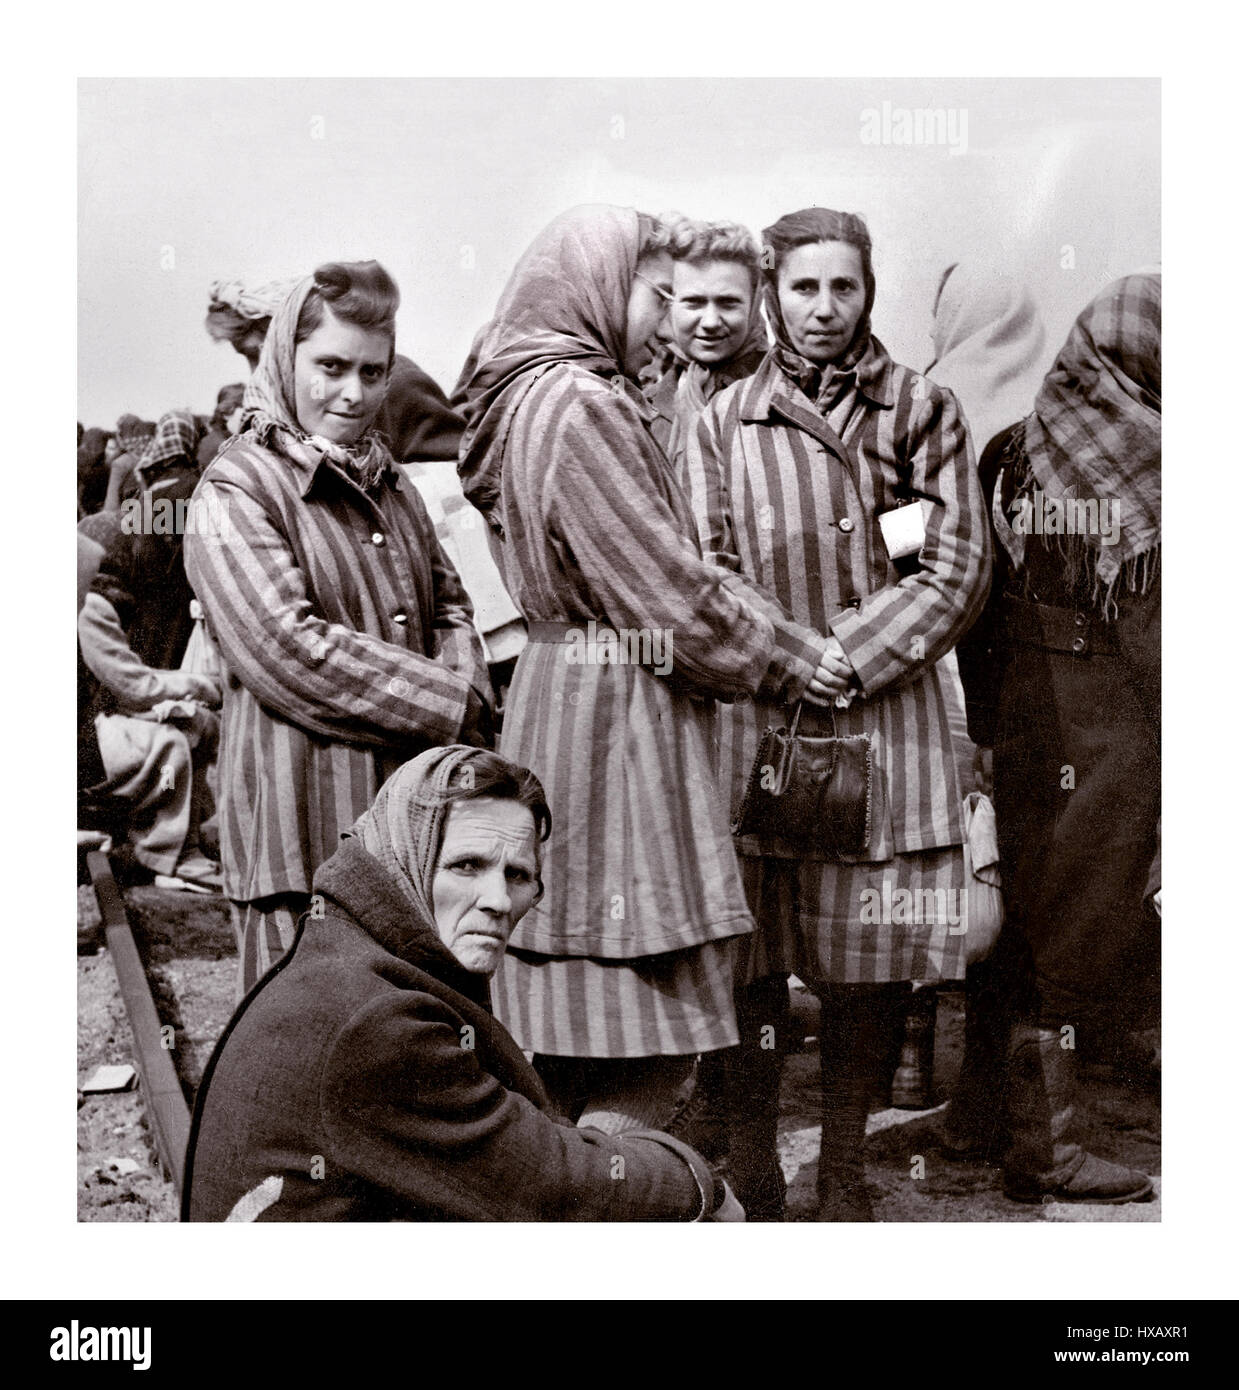 Ravensbrück Donne prigionieri in uniforme campo a righe del campo di concentramento e sterminio di Ravensbrück gestito da WW2 nazisti Germania, appena liberato 1945 dall'Armata Rossa. Il campo di prigionia femminile era situato a 90 km a nord di Berlino…Germania nazista seconda guerra mondiale Foto Stock